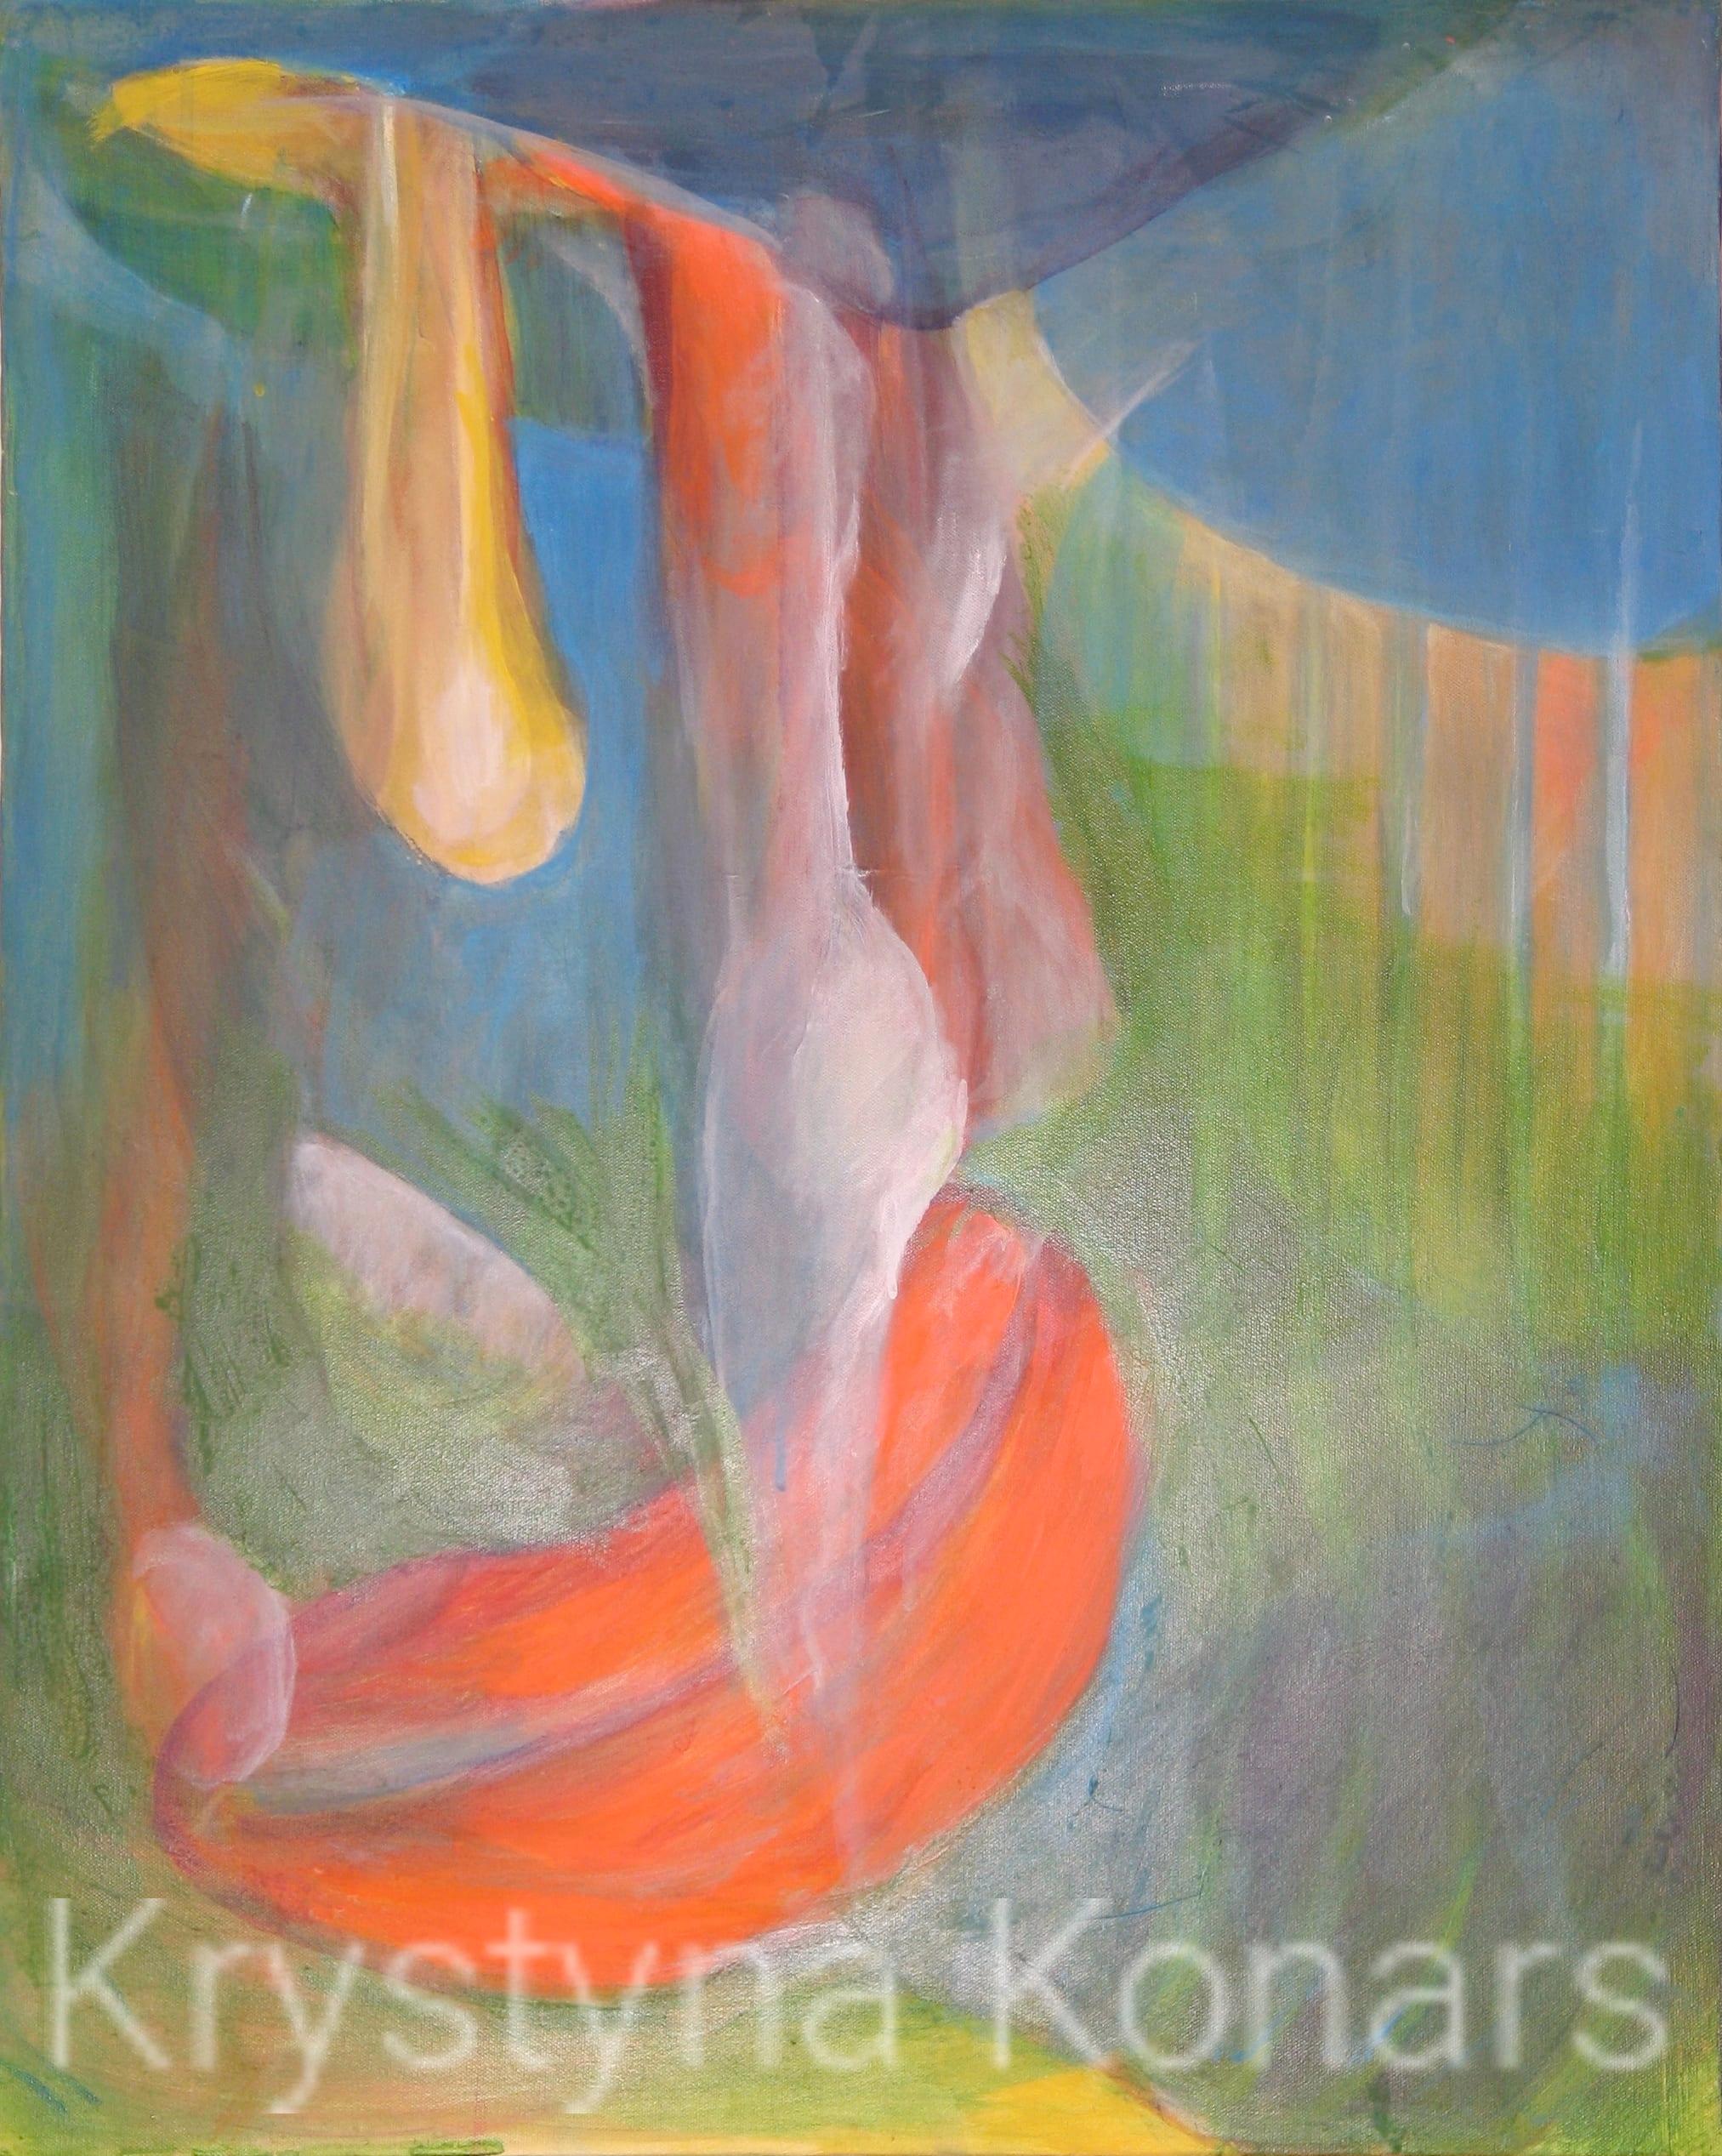 Krystyna Konars Painting